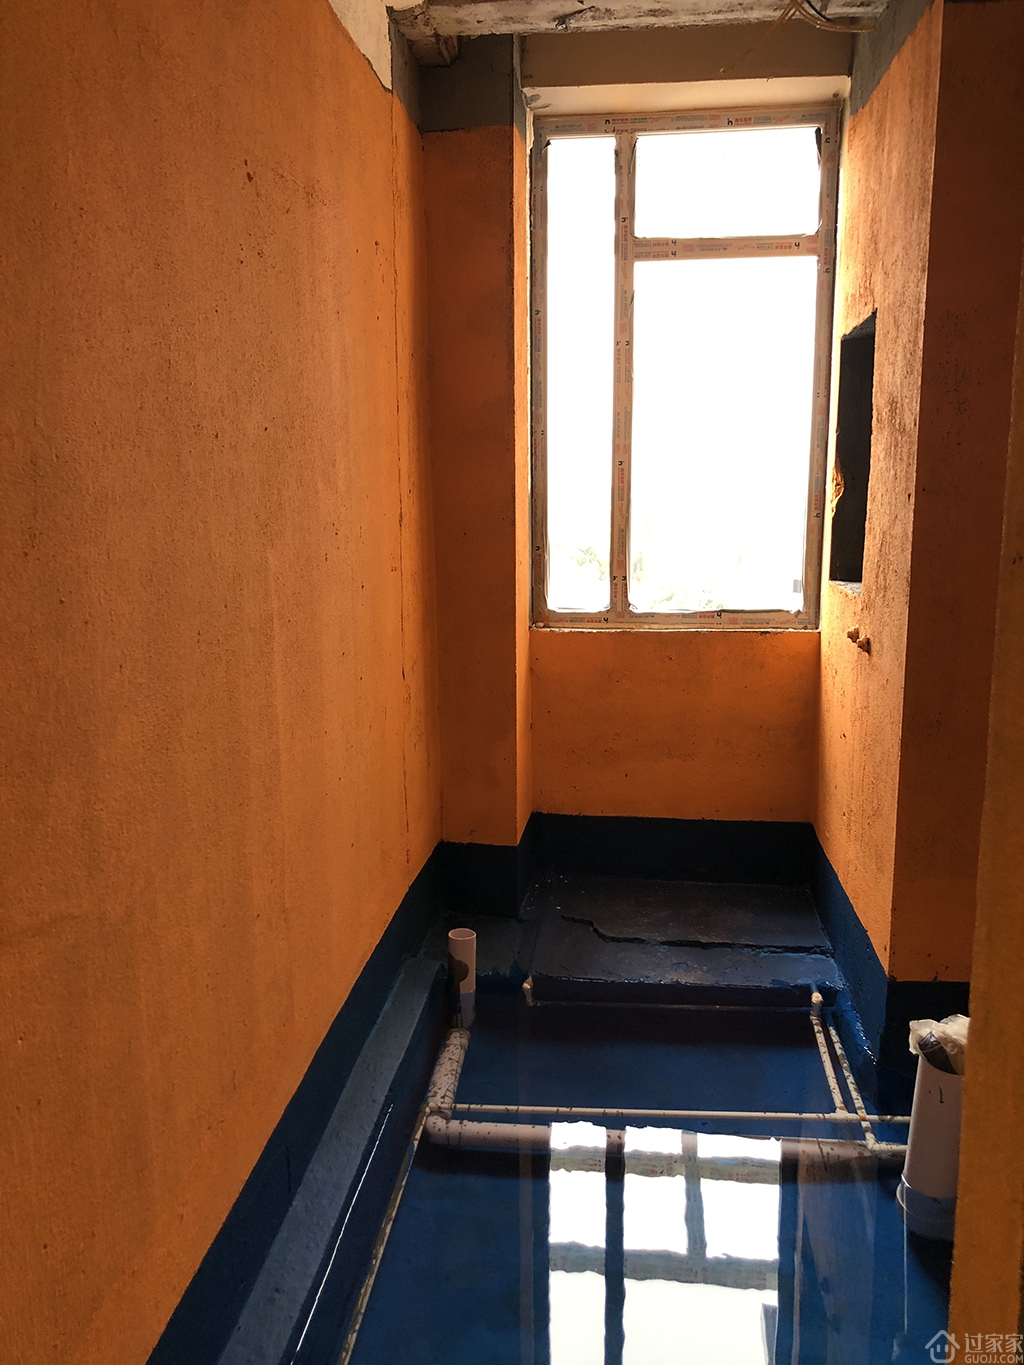 项目经理版施工节点17:卫生间、阳台开始做防水